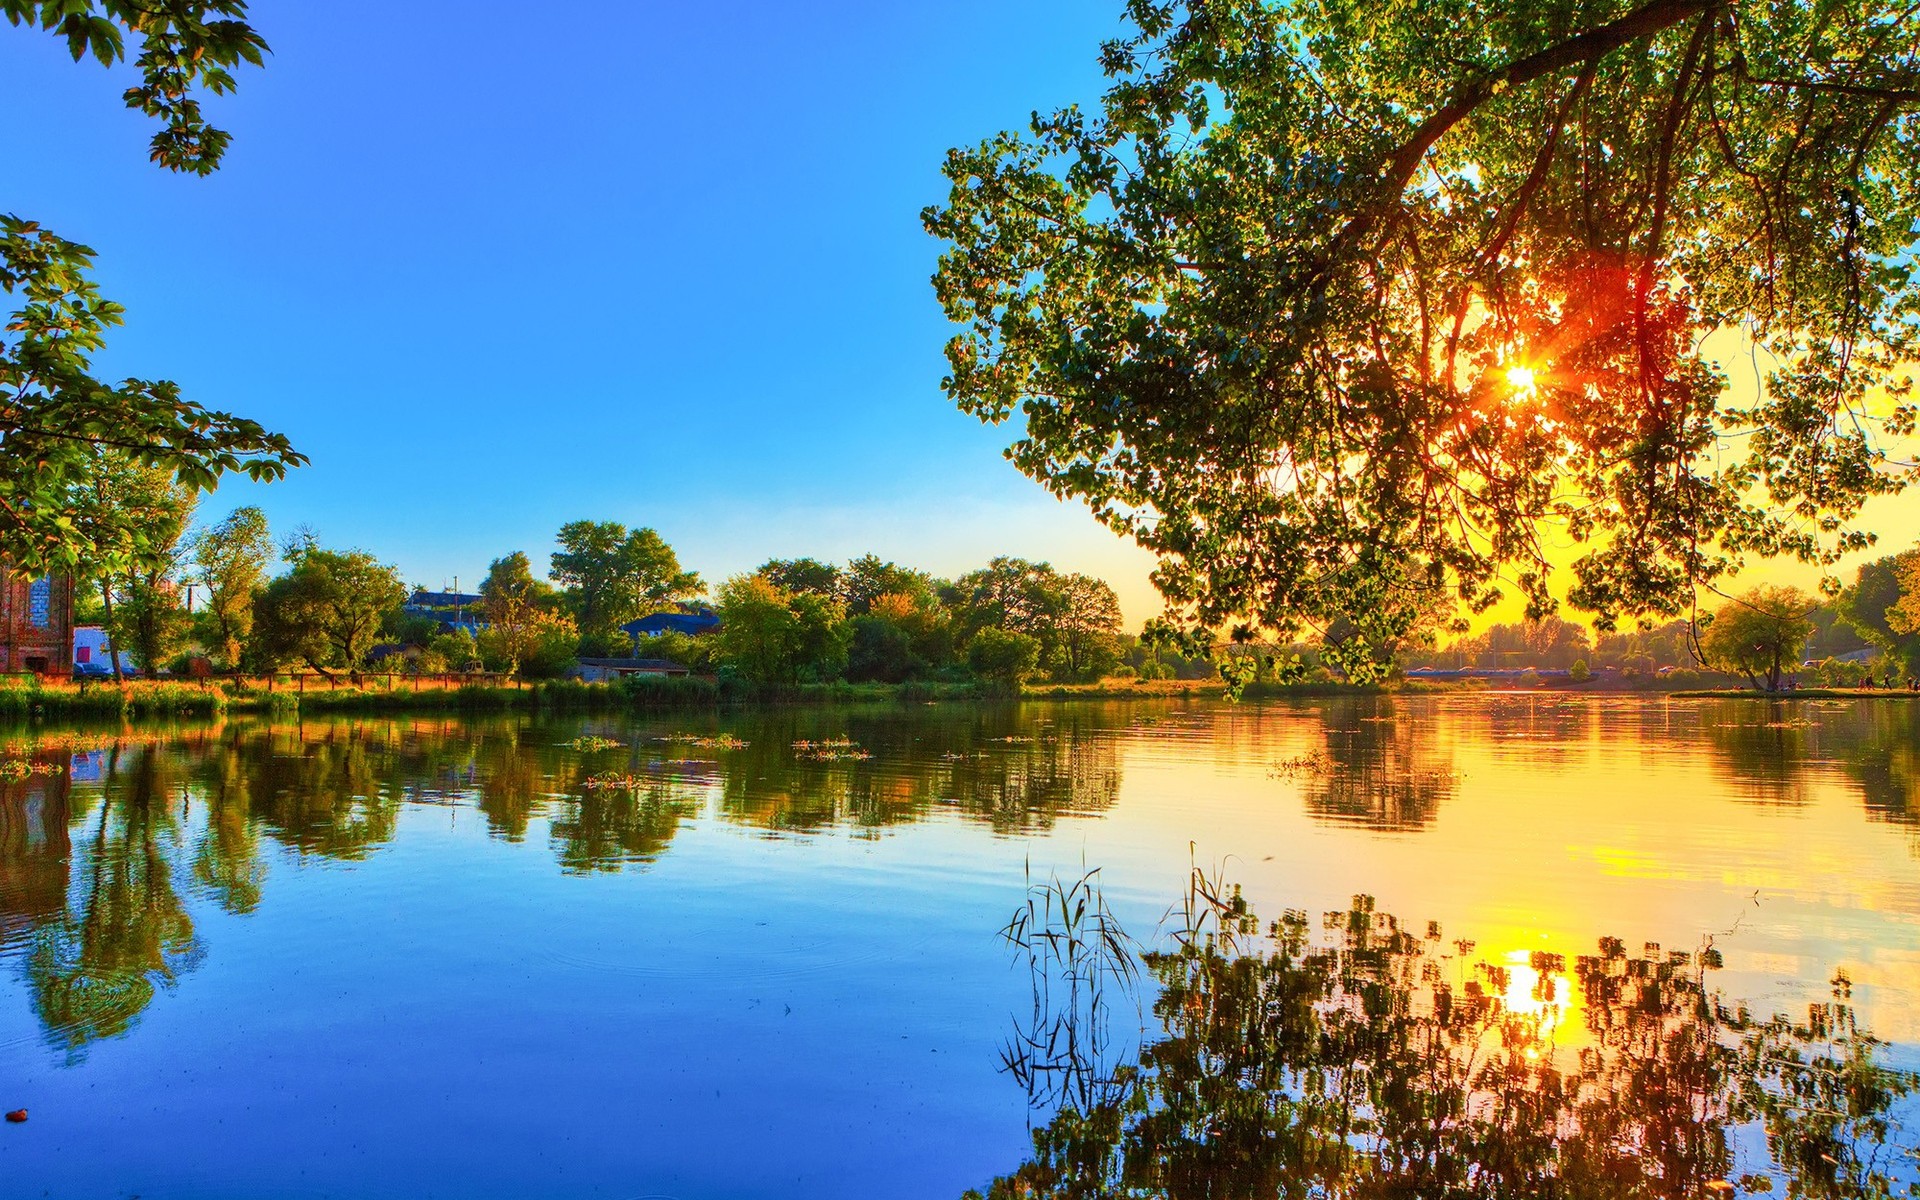 пейзажи отражение дерево природа озеро воды пейзаж на открытом воздухе река небо лето бассейн парк солнце рассвет сезон хорошую погоду деревья синий